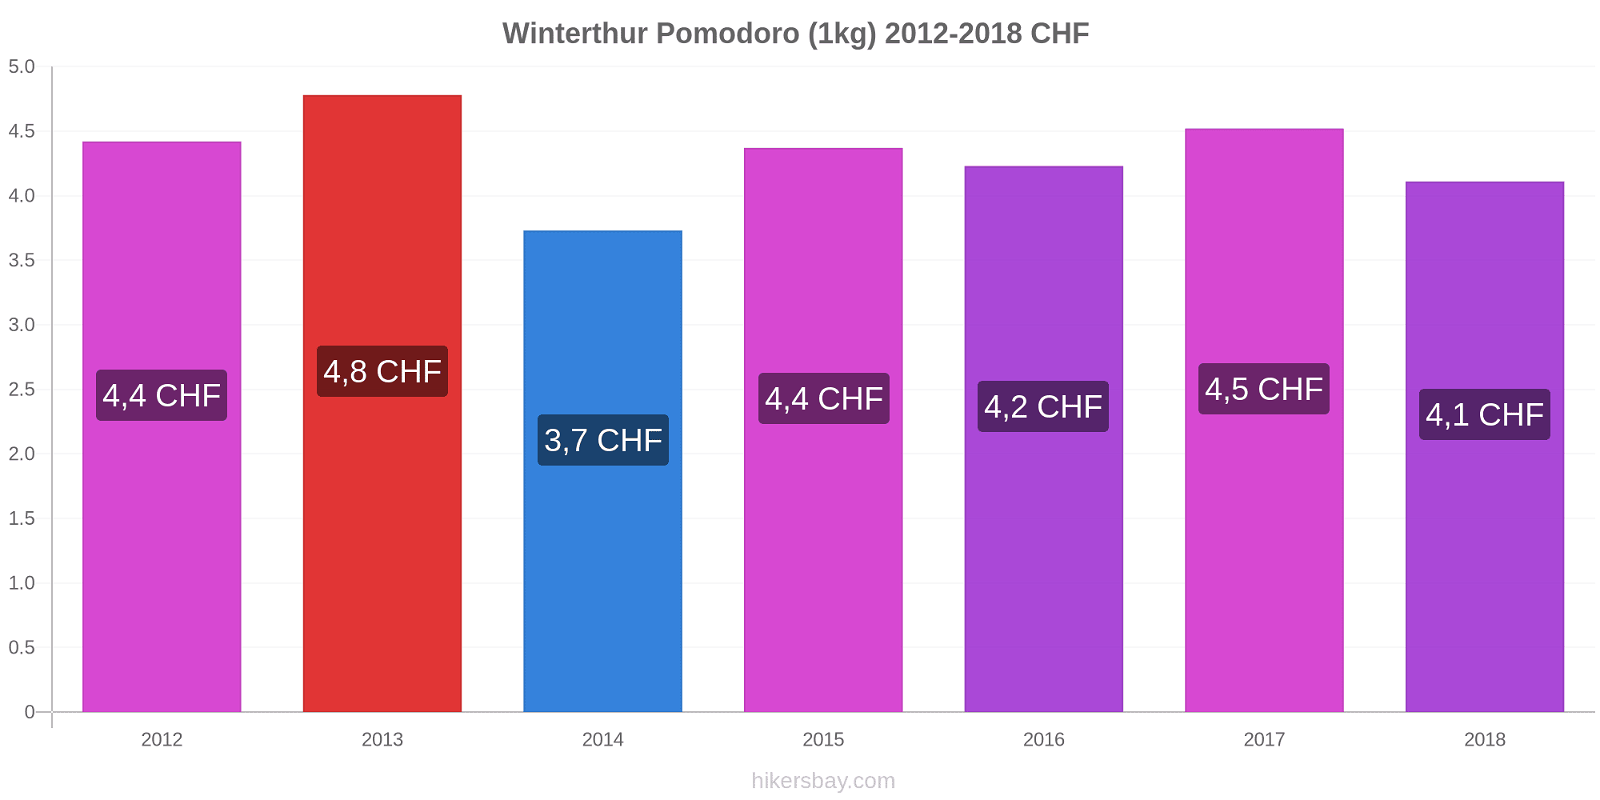 Winterthur variazioni di prezzo Pomodoro (1kg) hikersbay.com